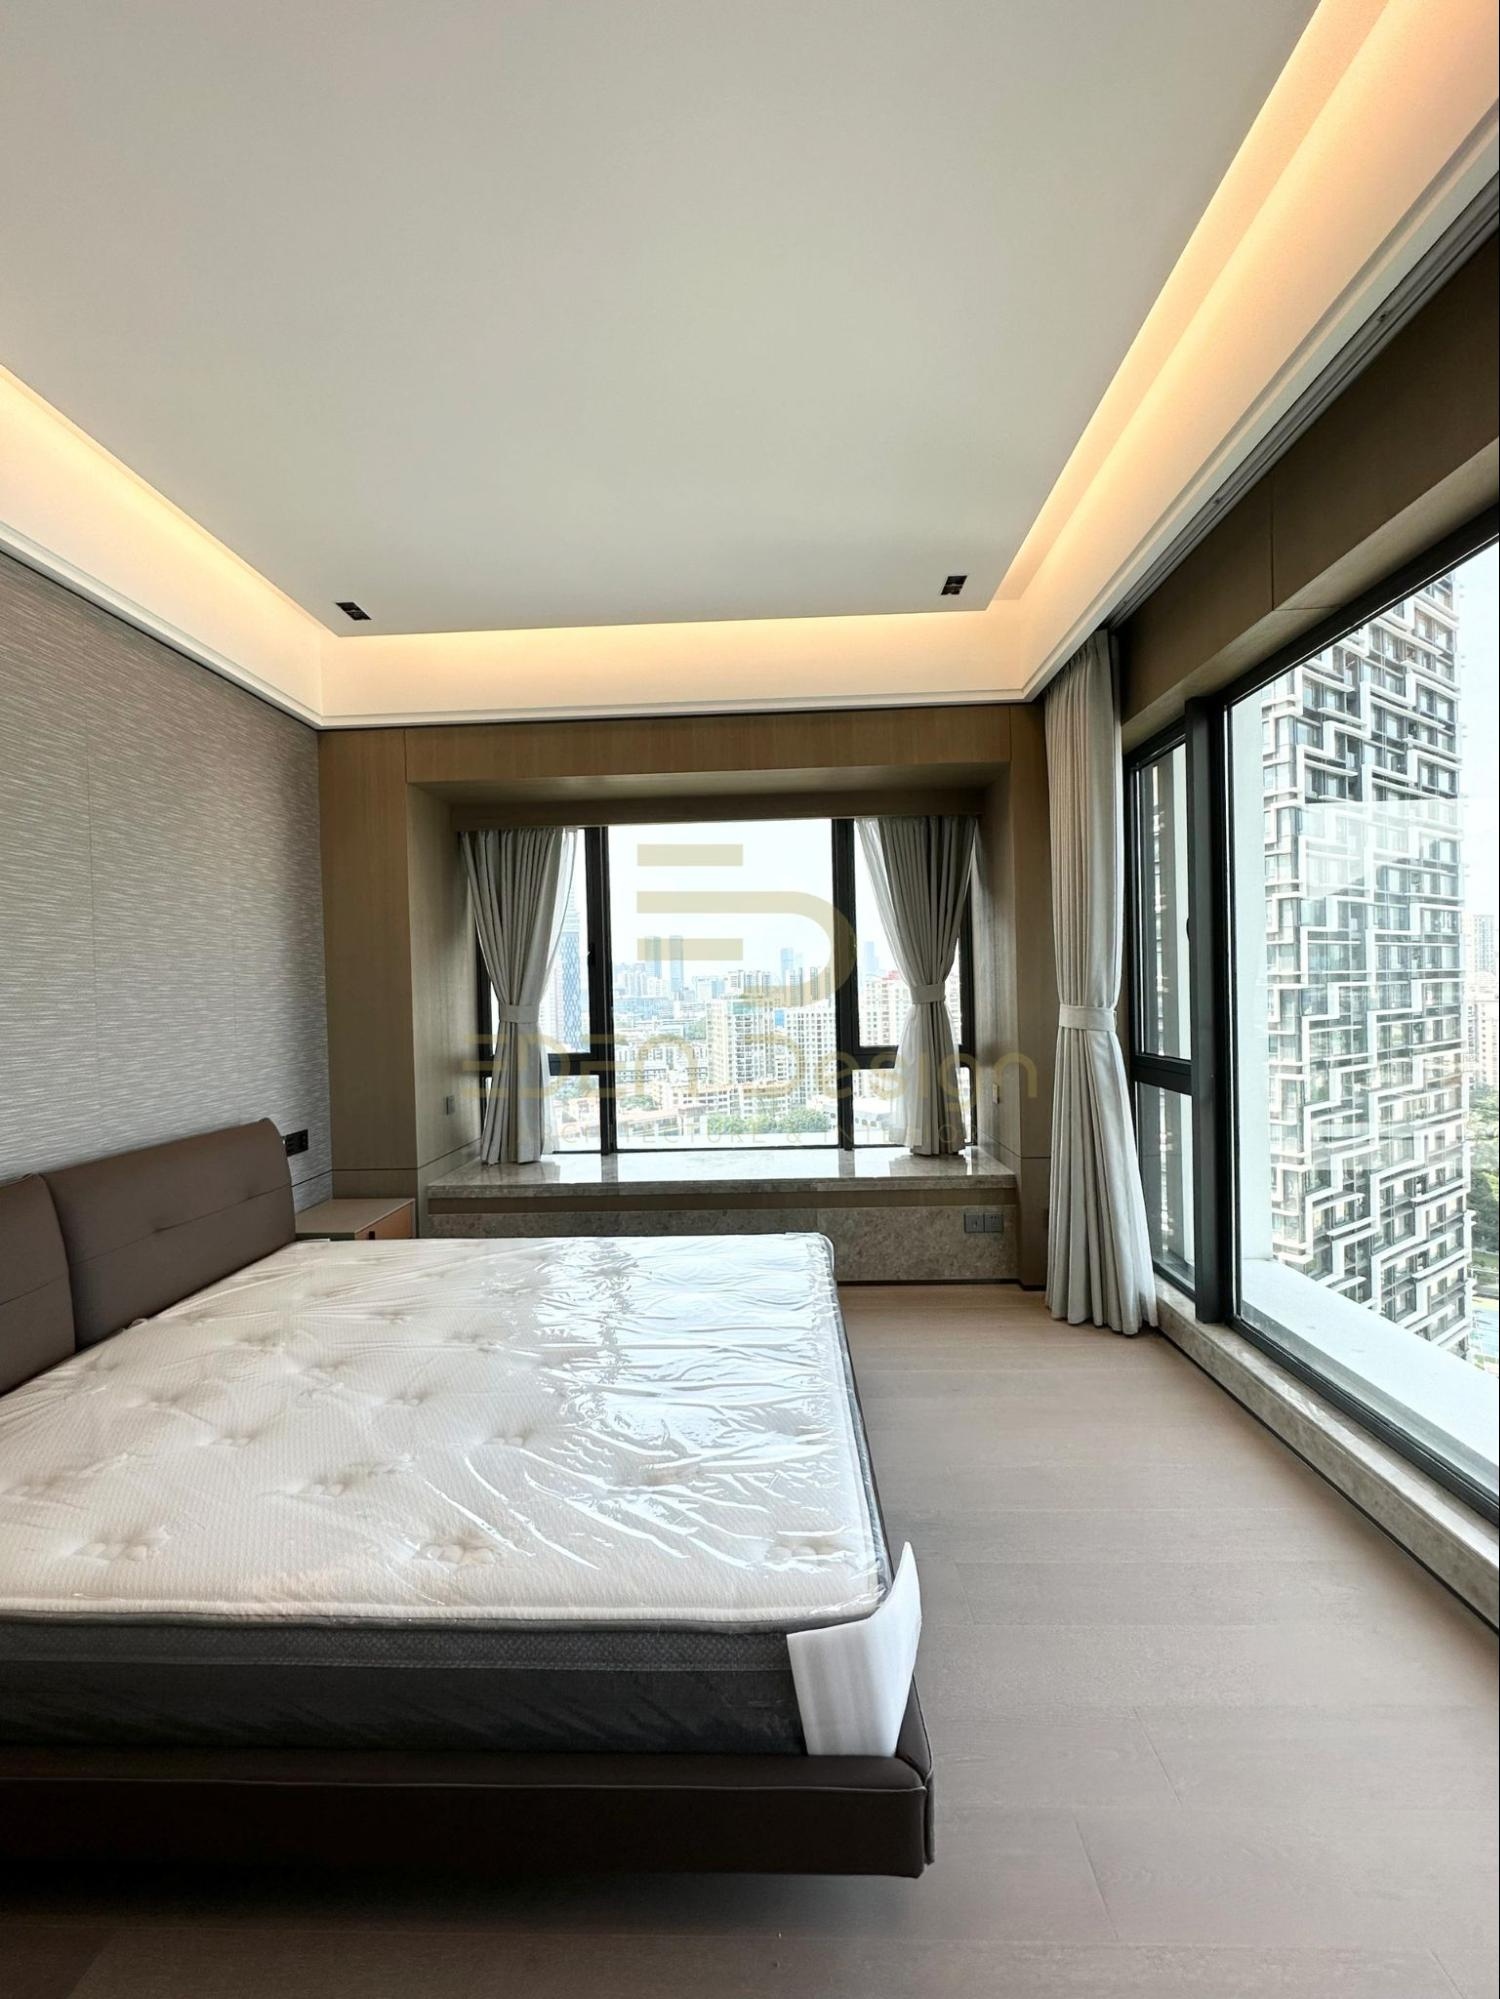 Phòng ngủ với tone màu trung tính và nội thất đơn giản